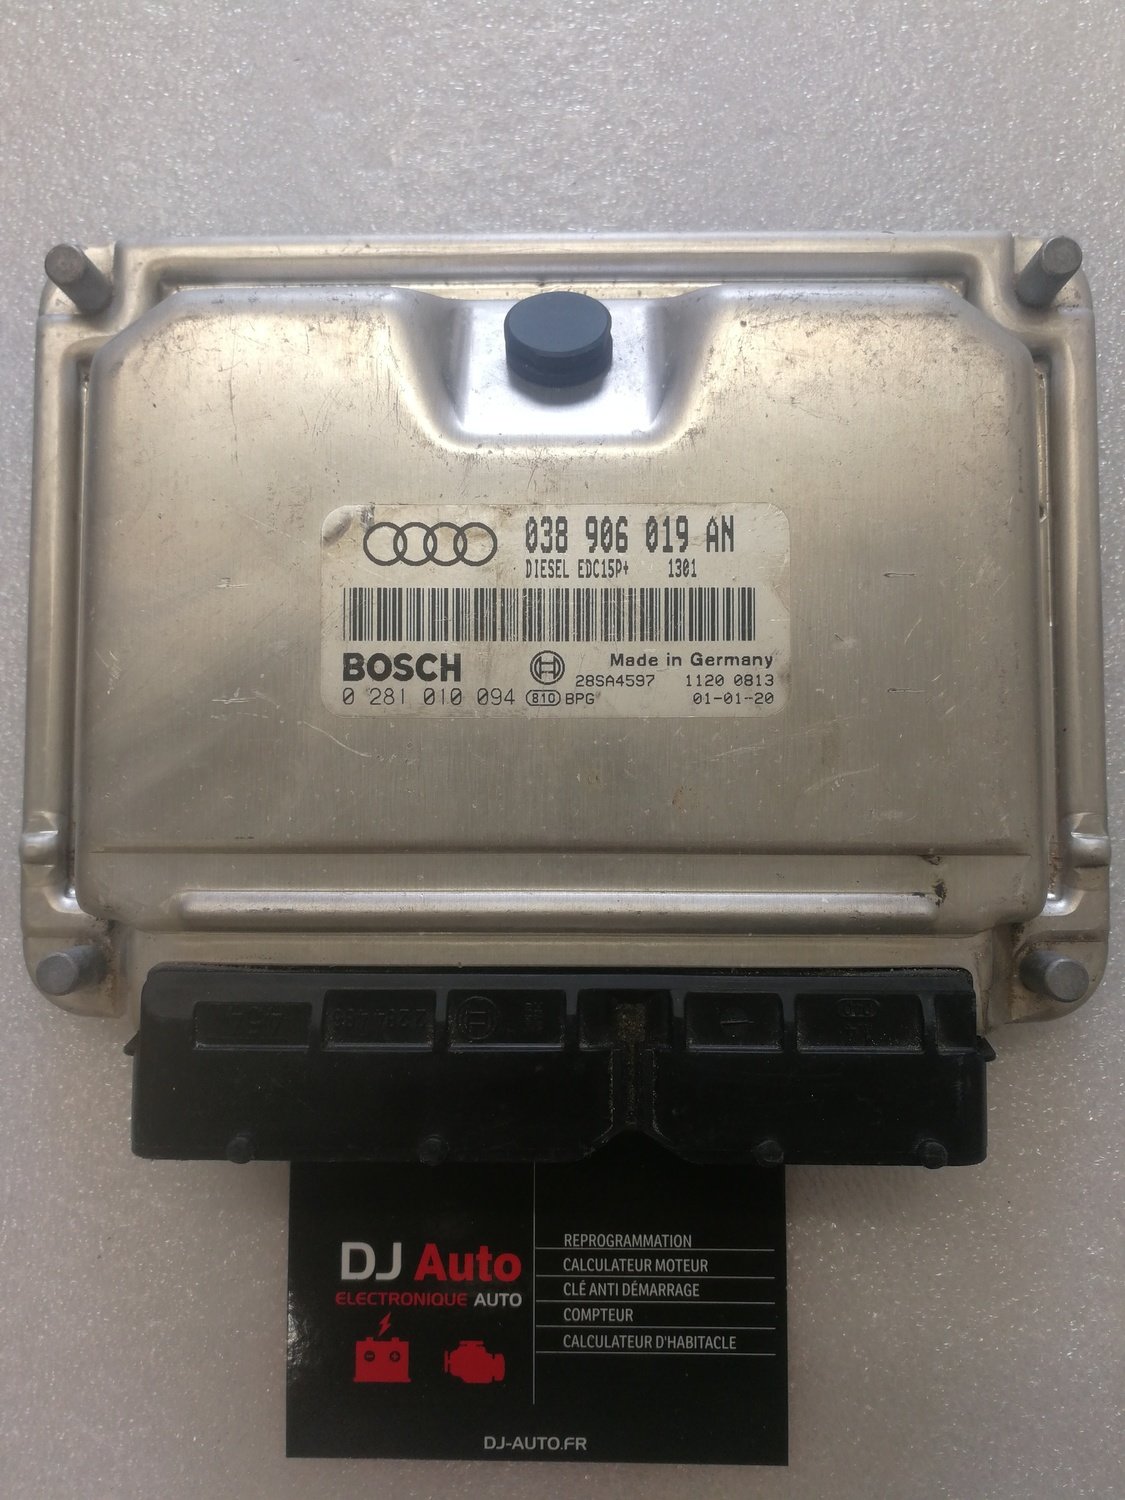 Audi Calculateur moteur A4 1.9 TDI Bosch 038 906 019 AN - 0 281 010 094